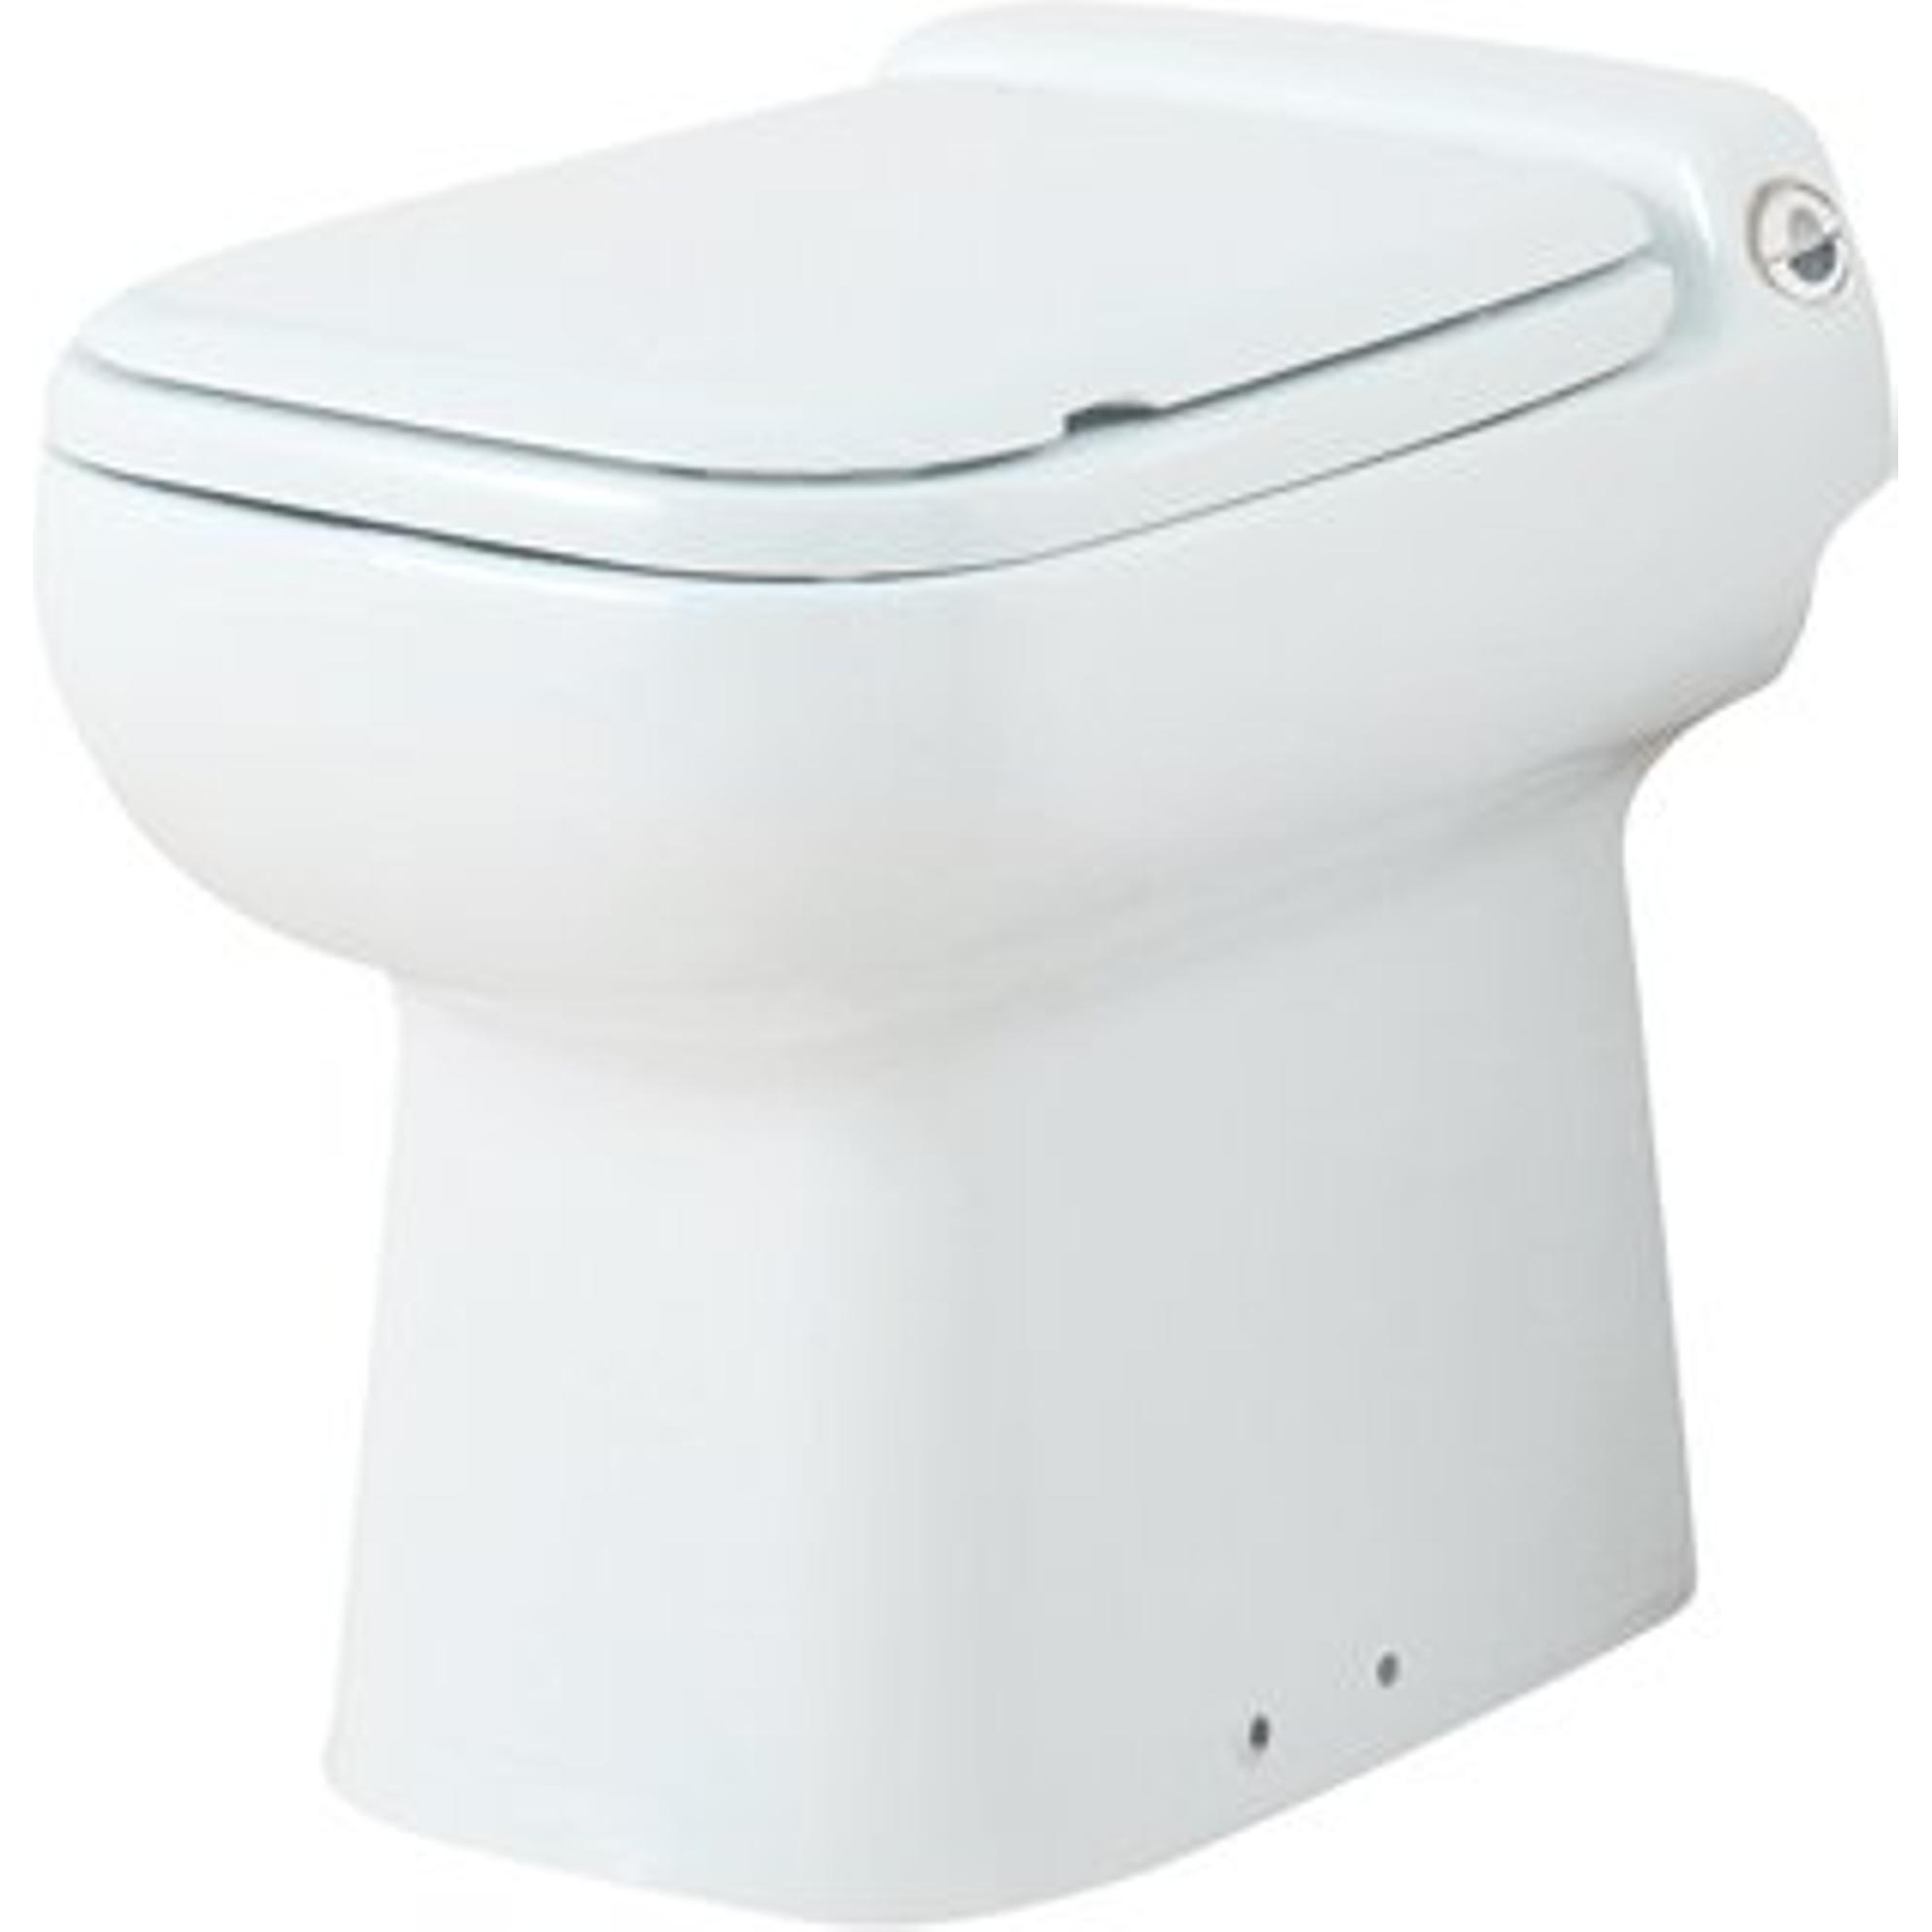 SANICOMPACT COMFORT ECO S WC suspendu avec broyeur sanitaire By Sanitrit